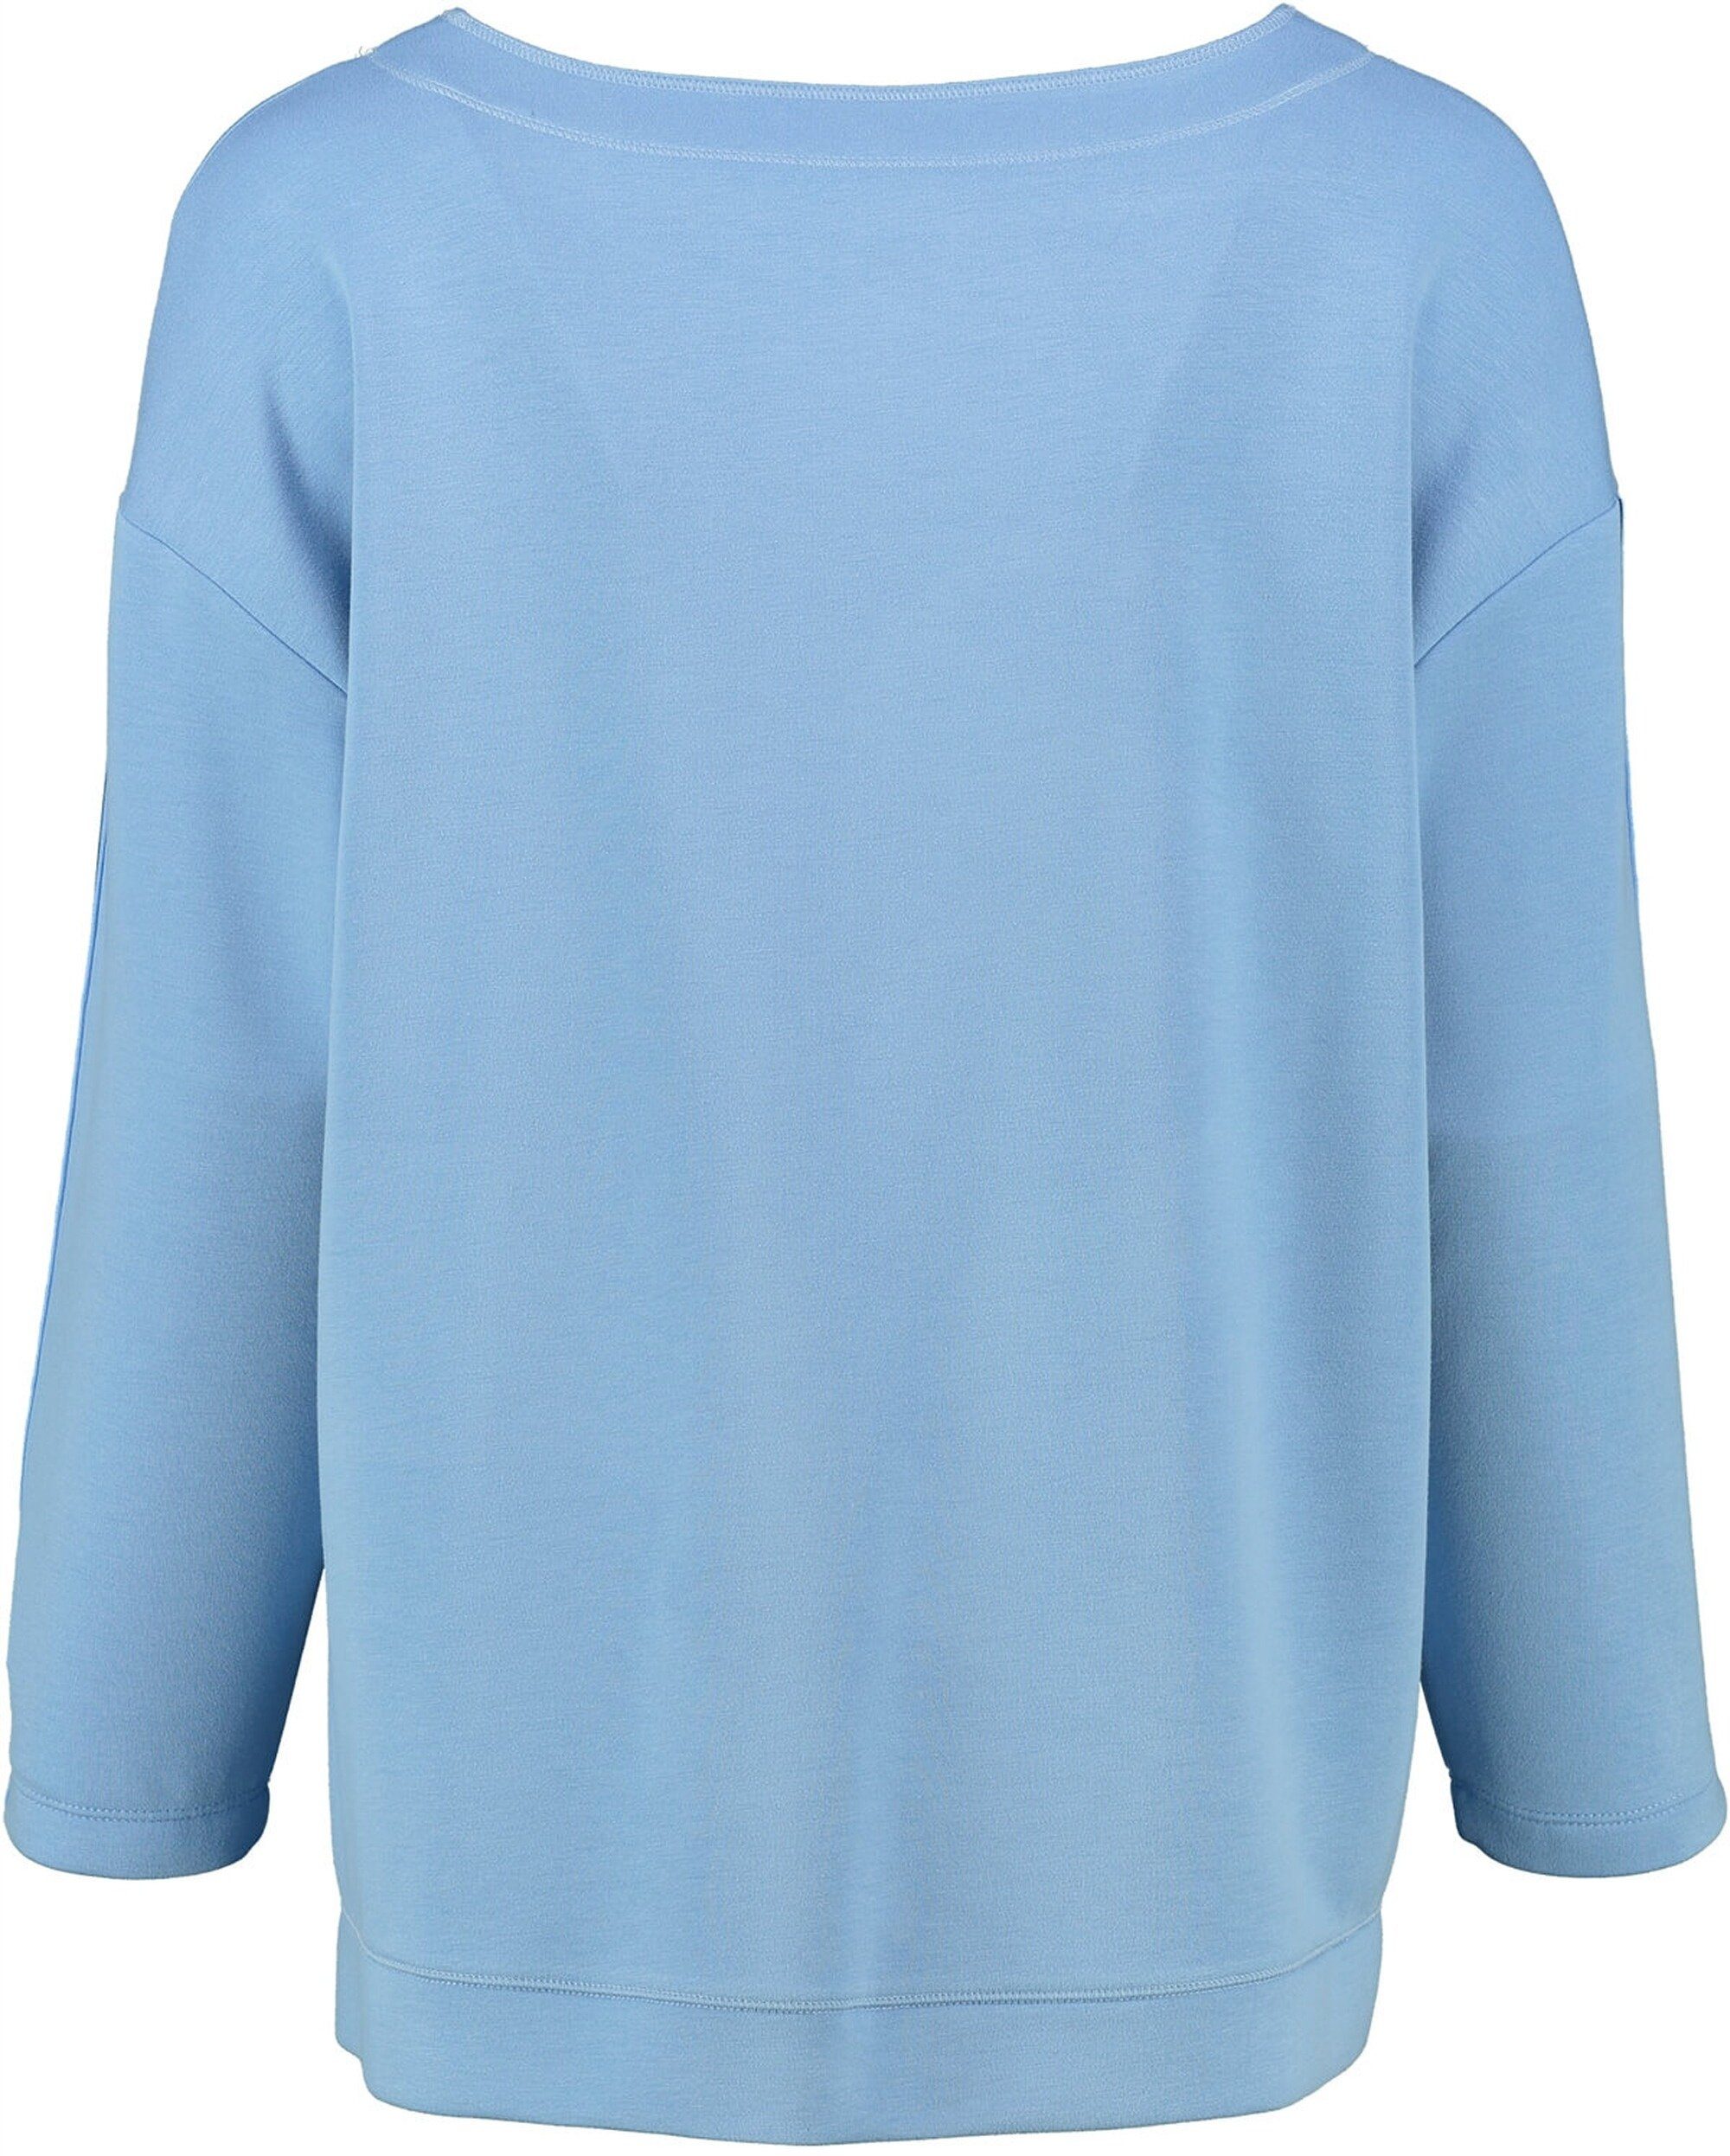 Strickpullover Qualität Rabe blau softer RABE Jersey-Shirt 3/4-Arm in